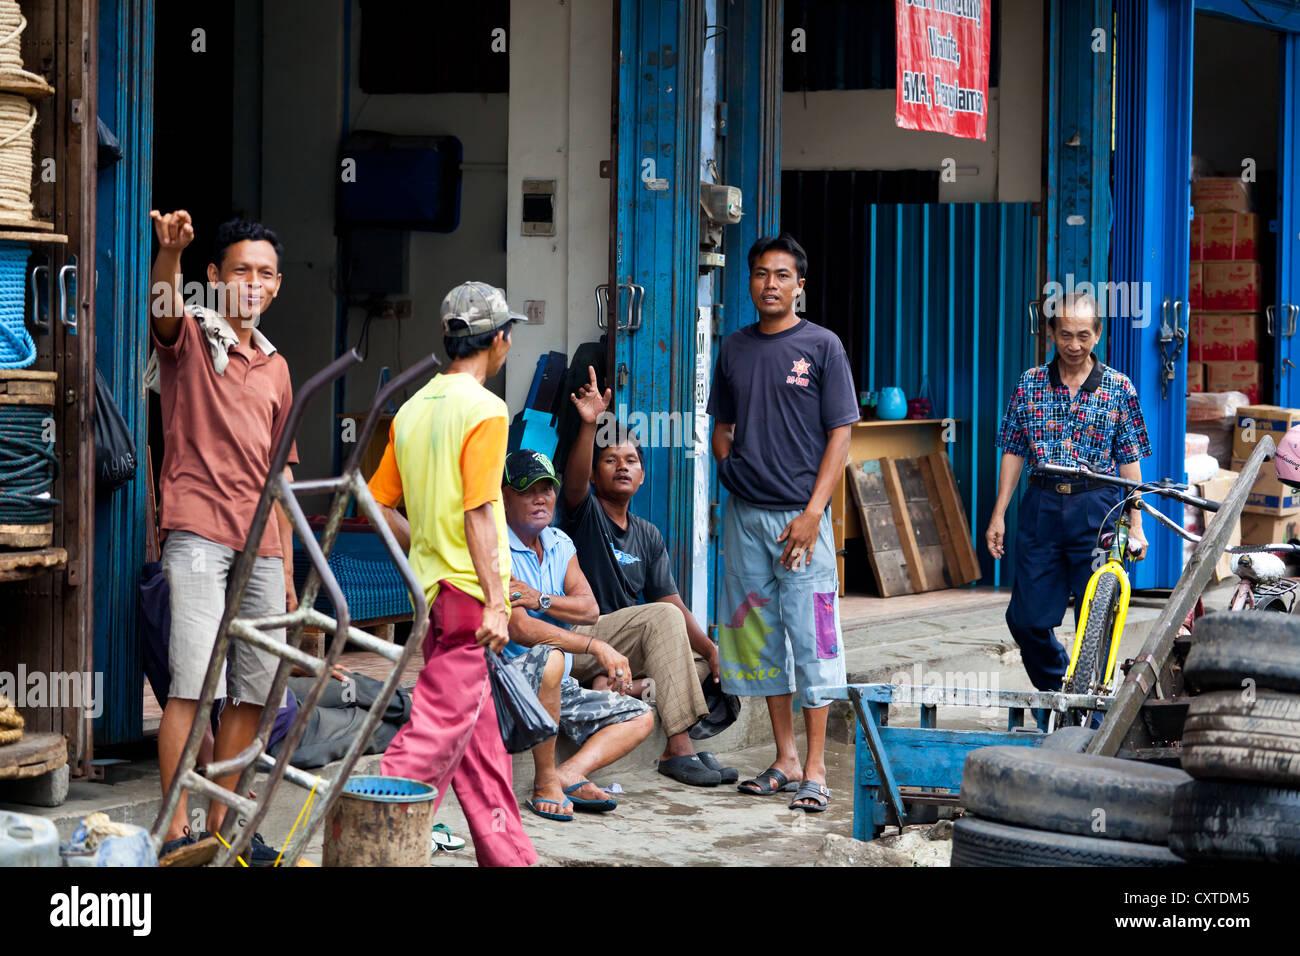 Street Life in Banjarmasin, Indonesia Stock Photo